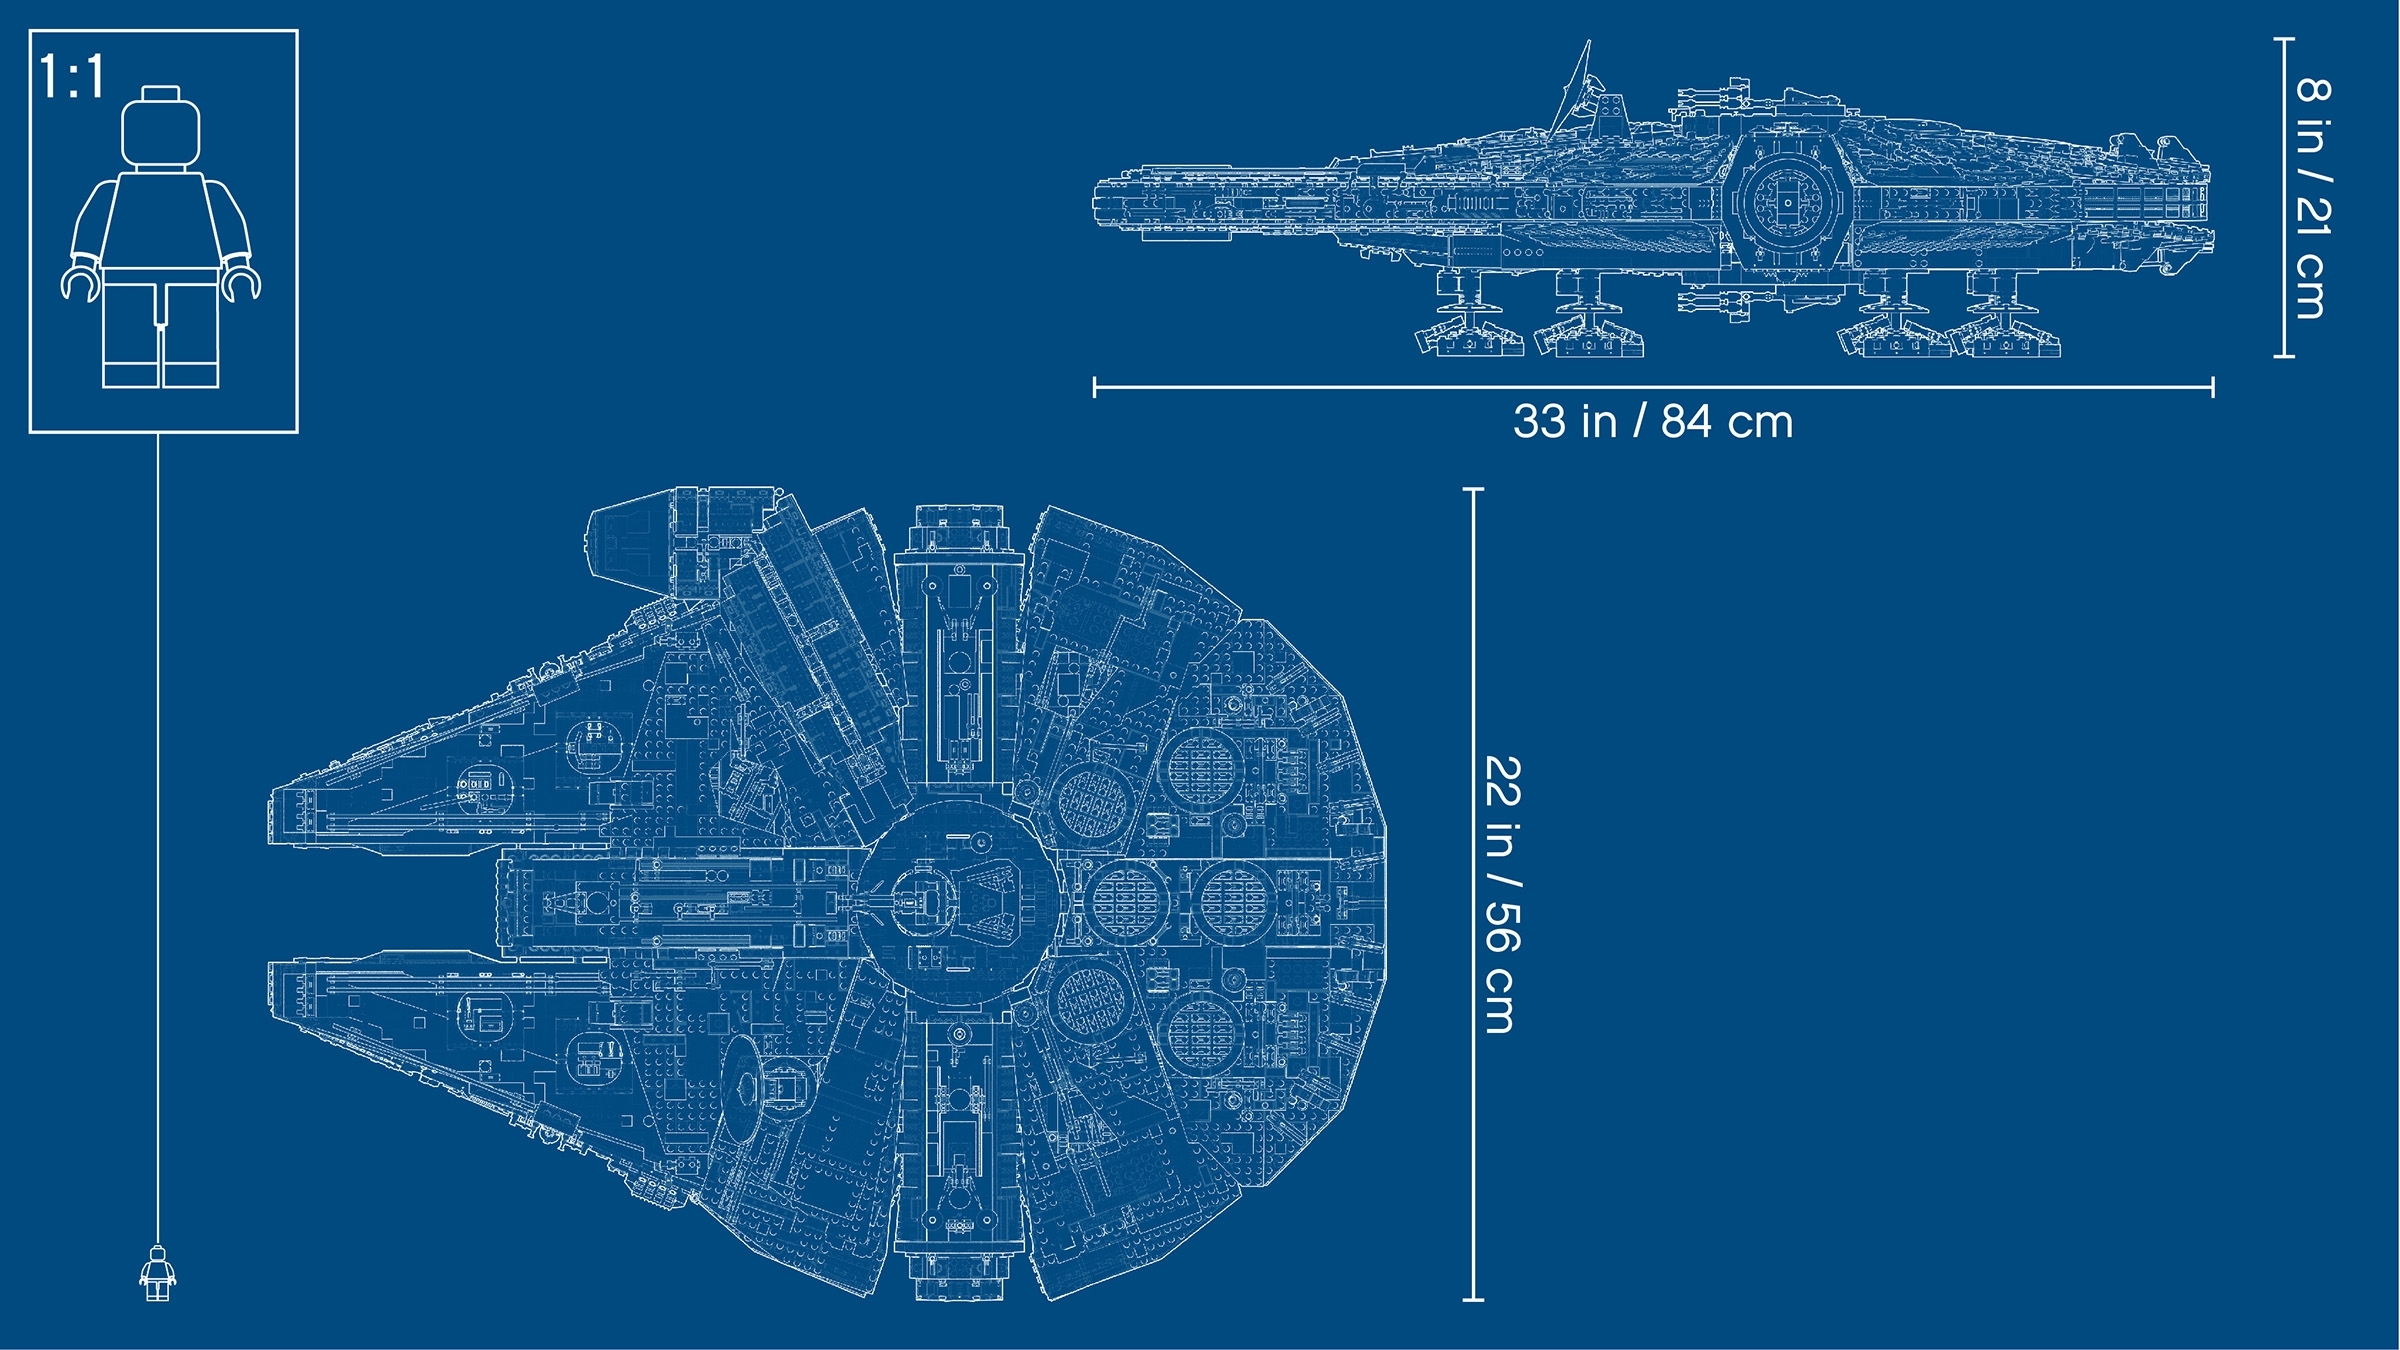 LEGO Star Wars 75192 Millennium Falcon fête ses cinq ans